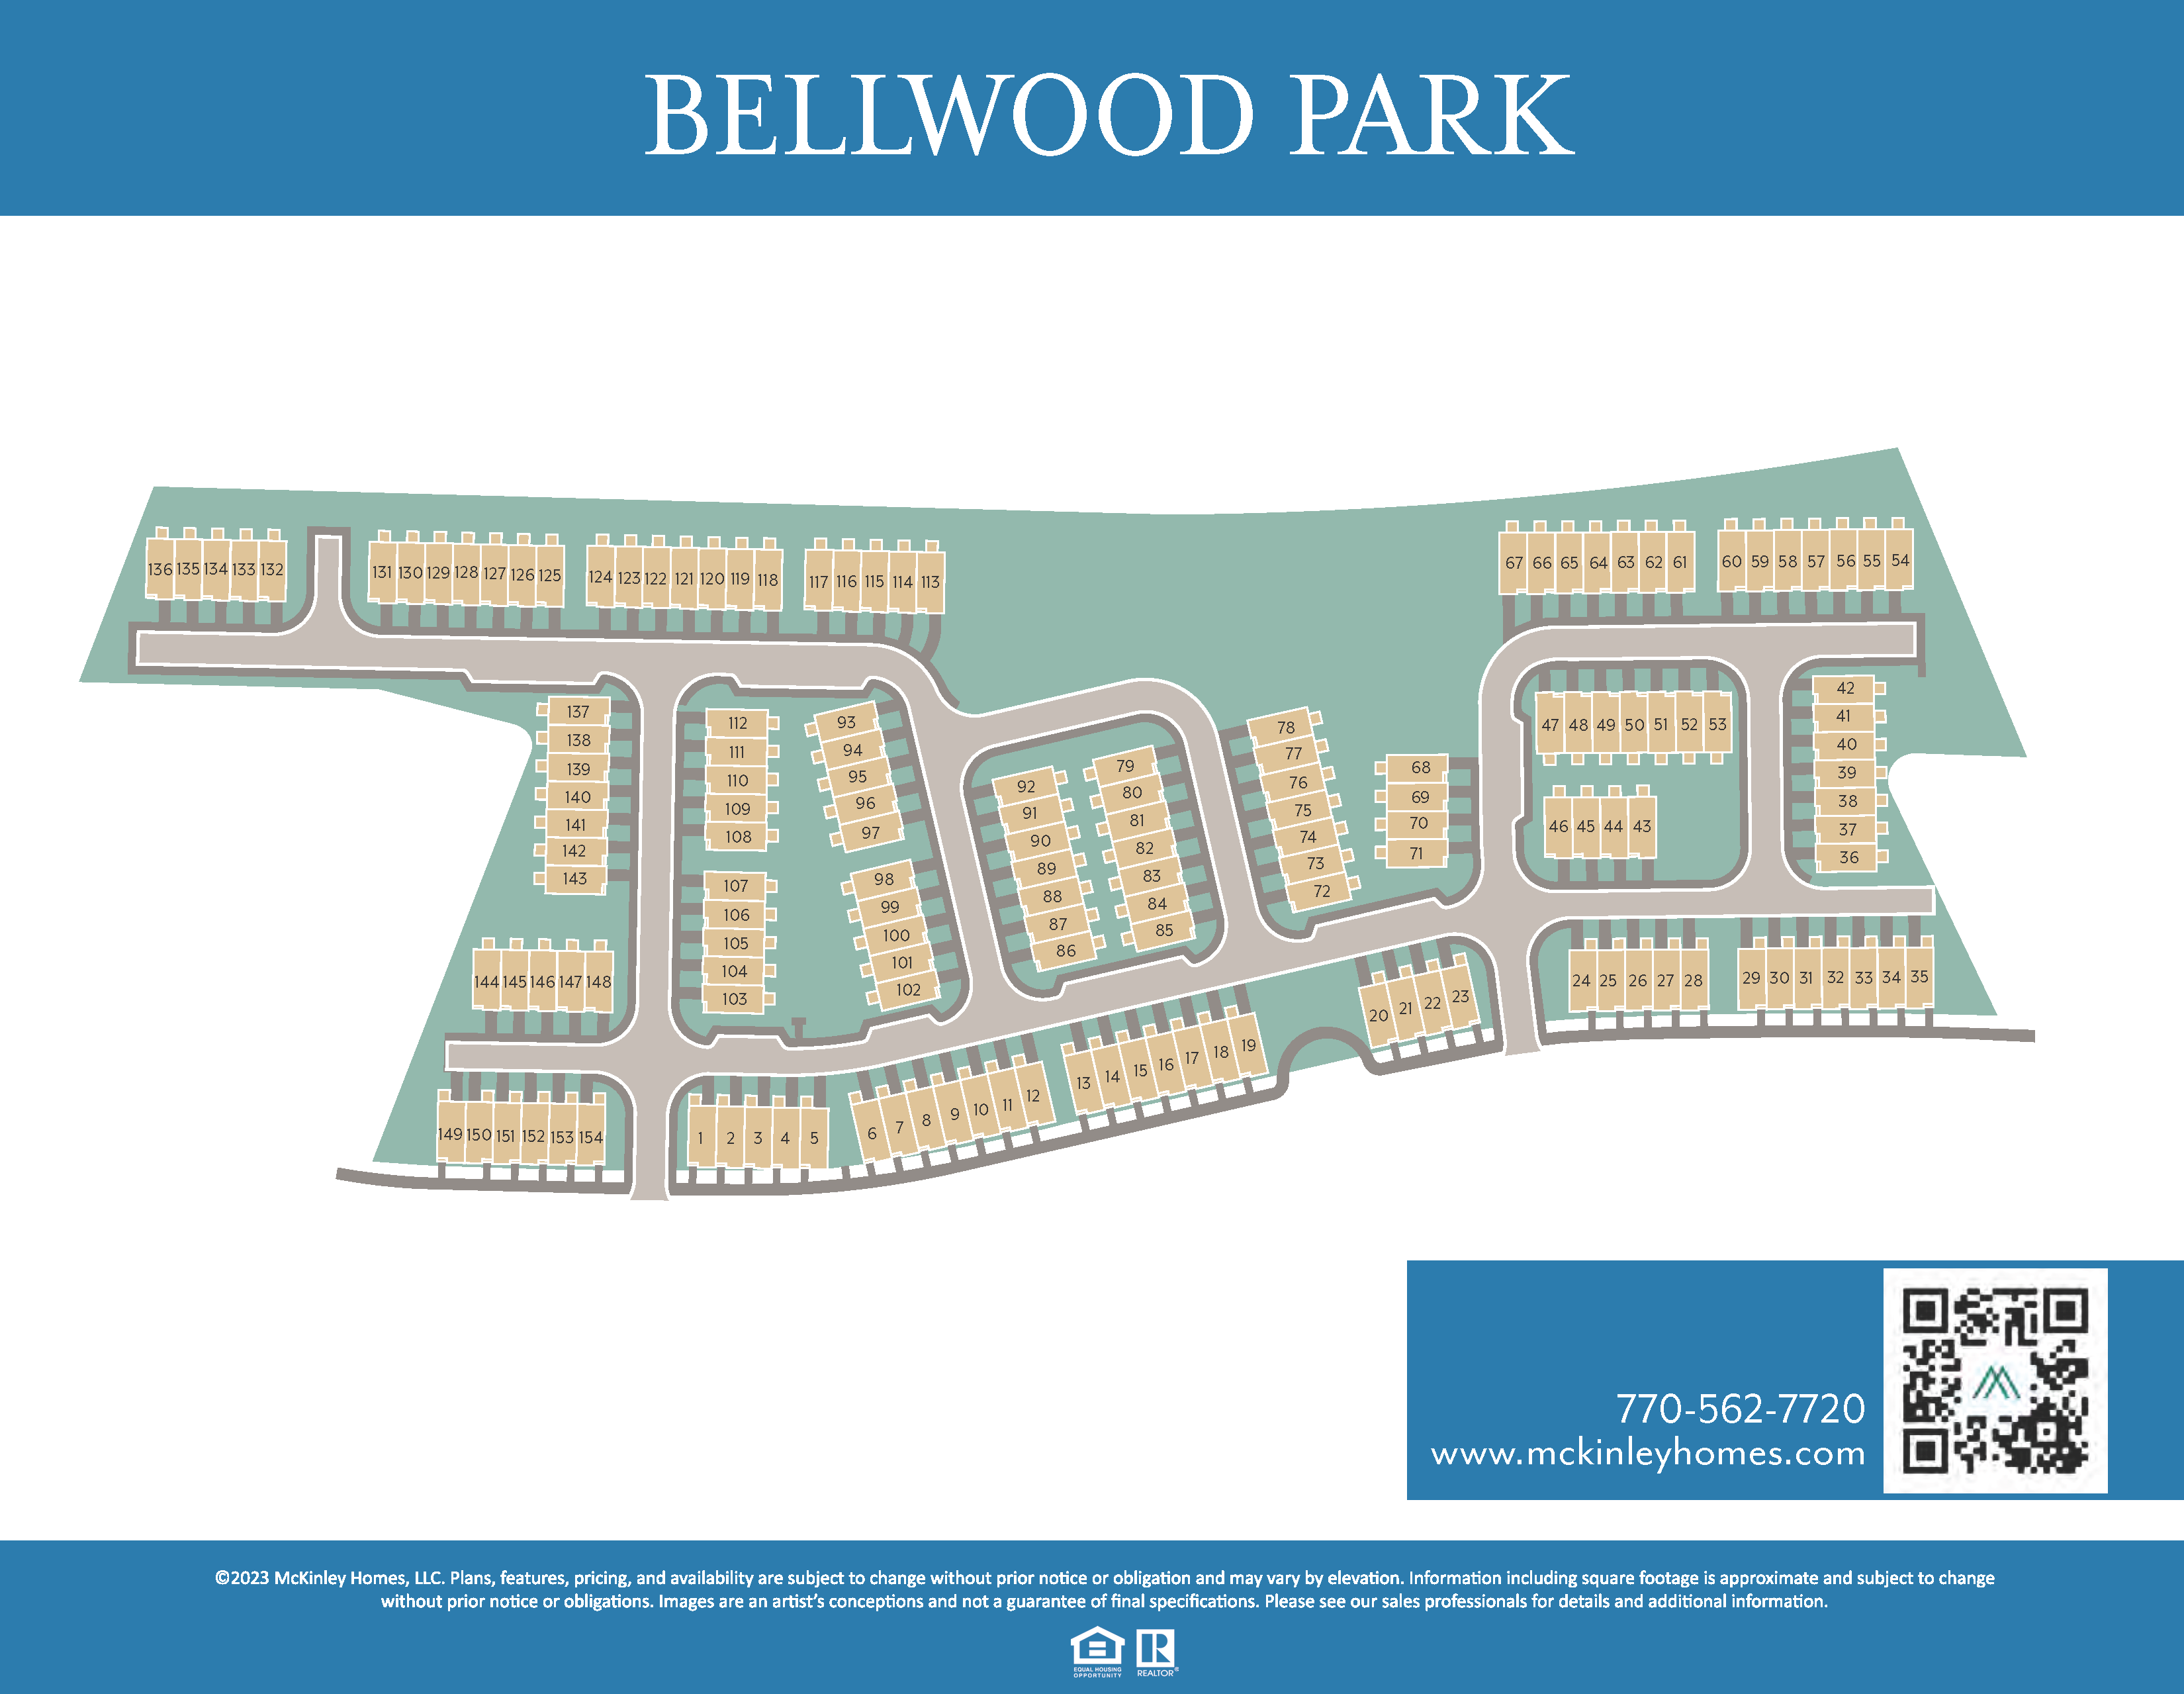 Bellwood Park